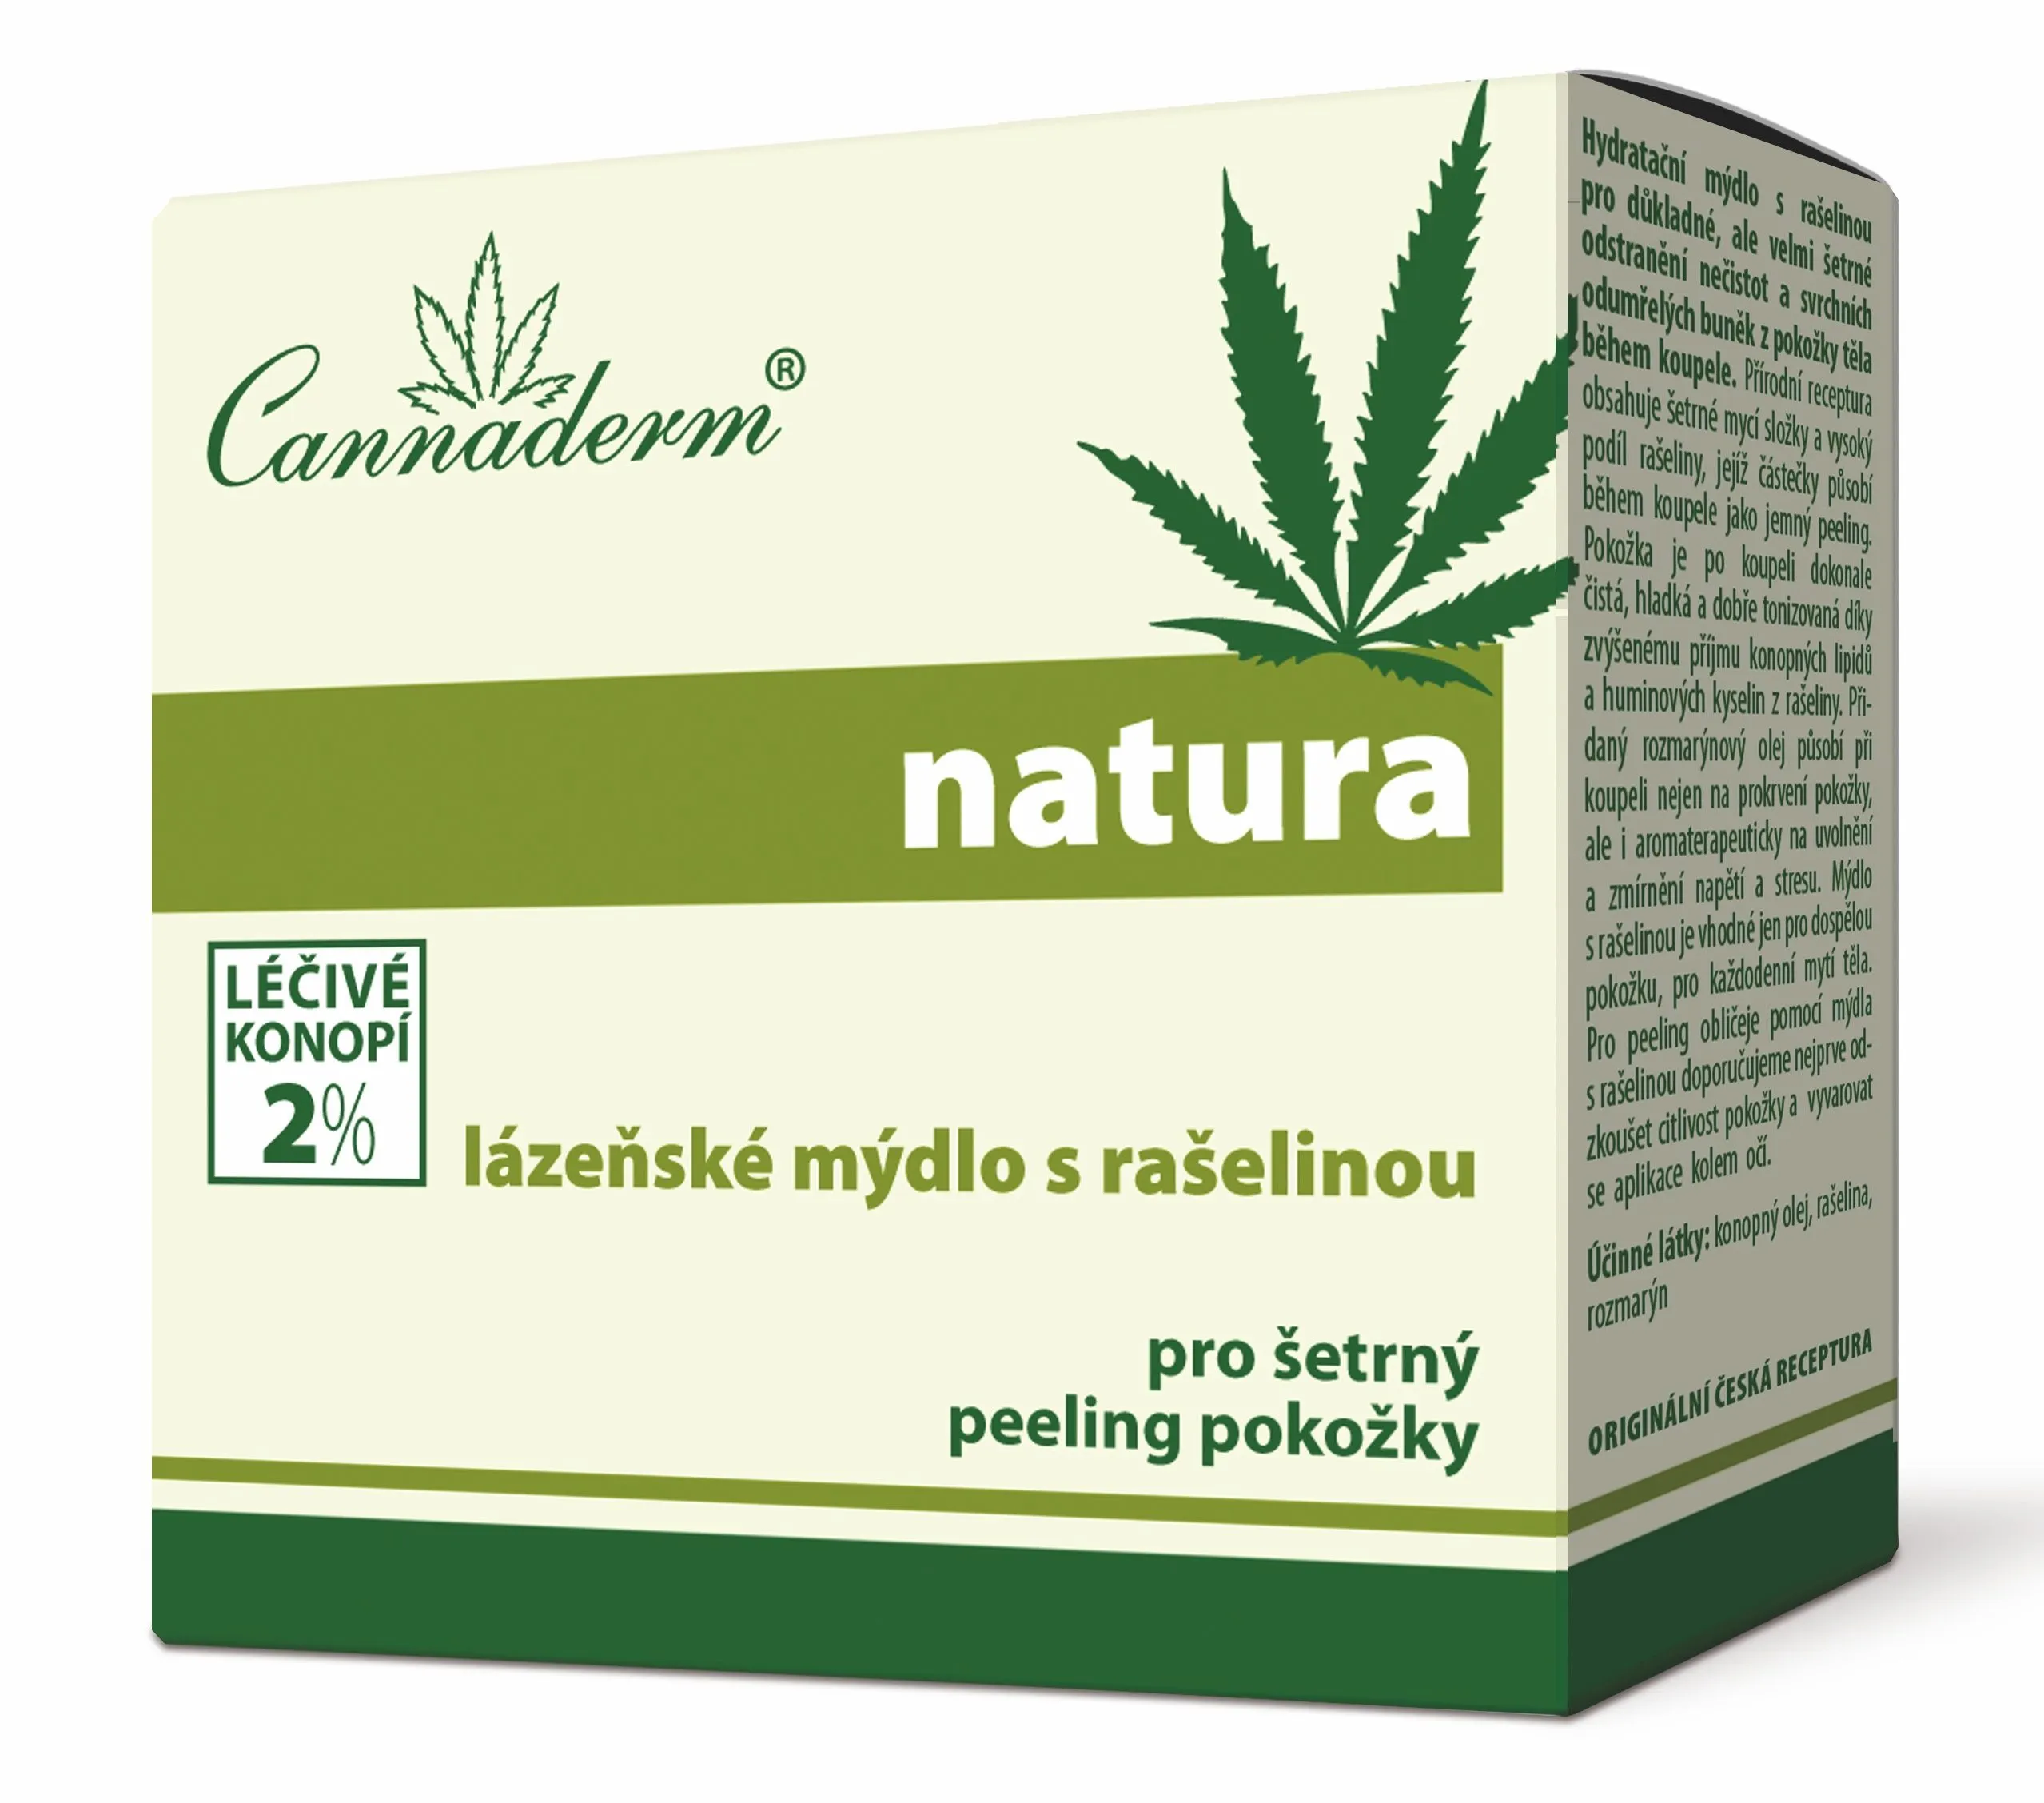 Cannaderm Natura Lázeňské mýdlo s rašelinou 80 g